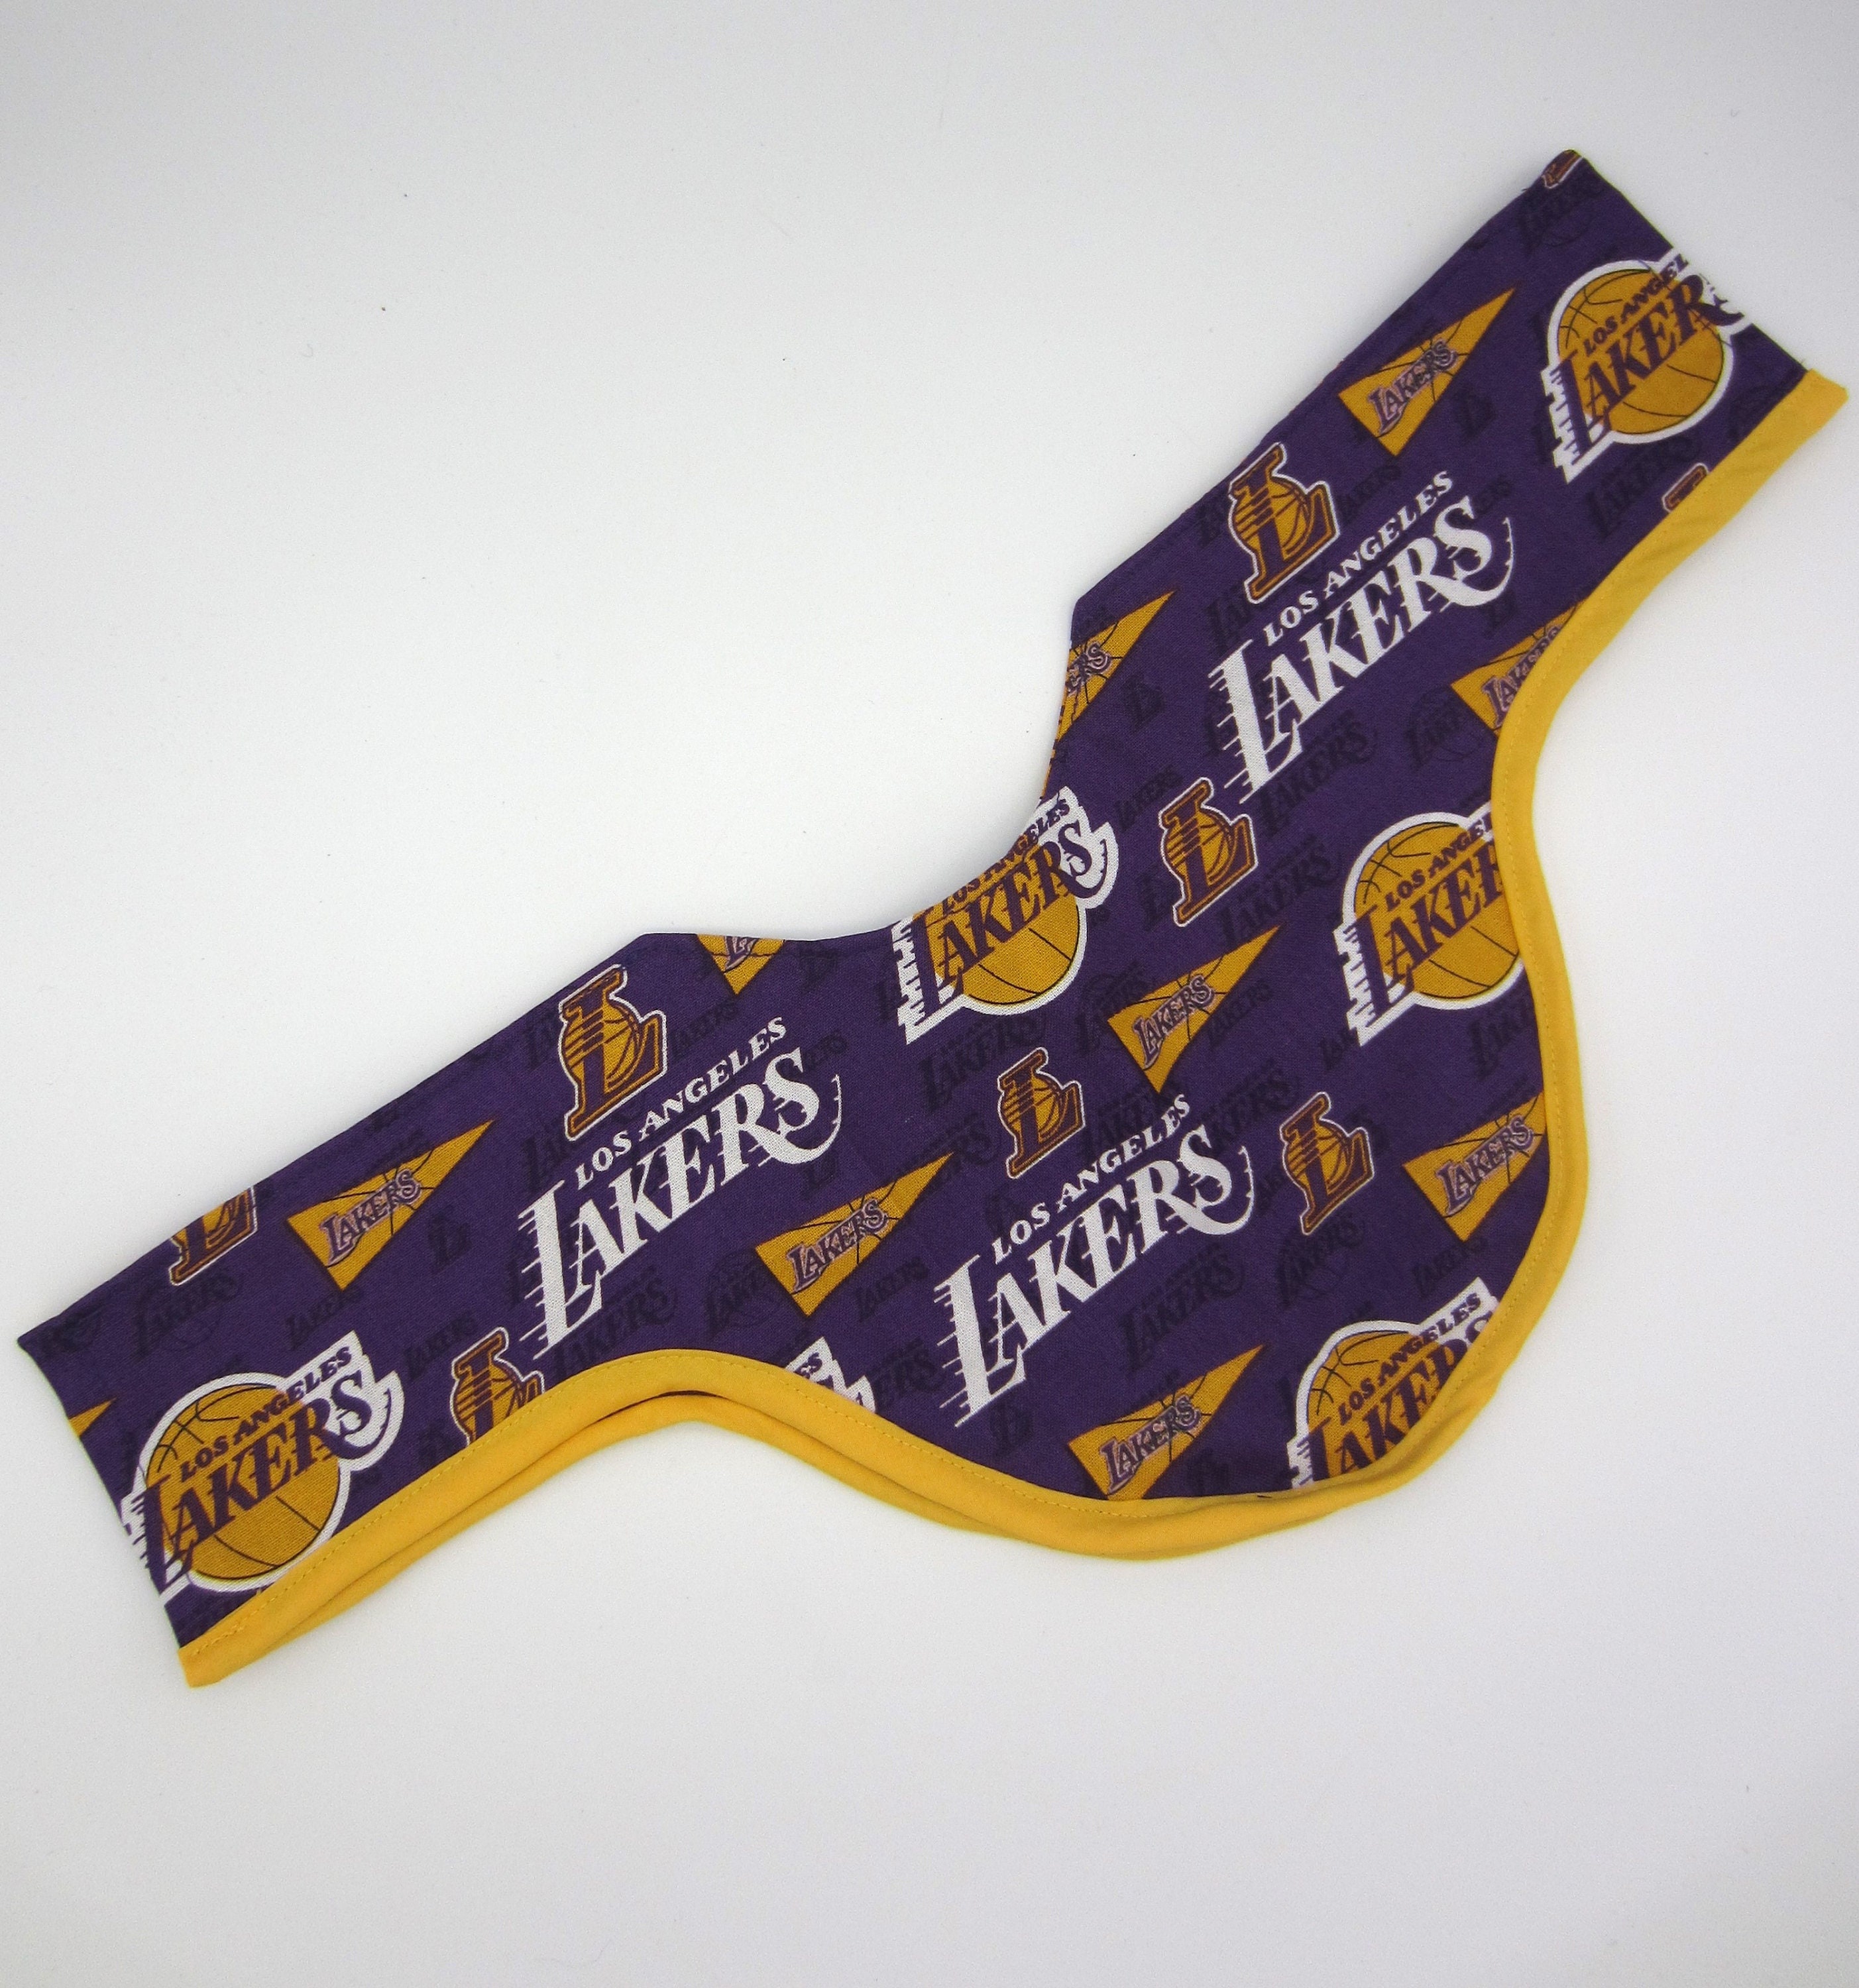 LA Lakers Parody Los Angeles Fakers Hoodie 